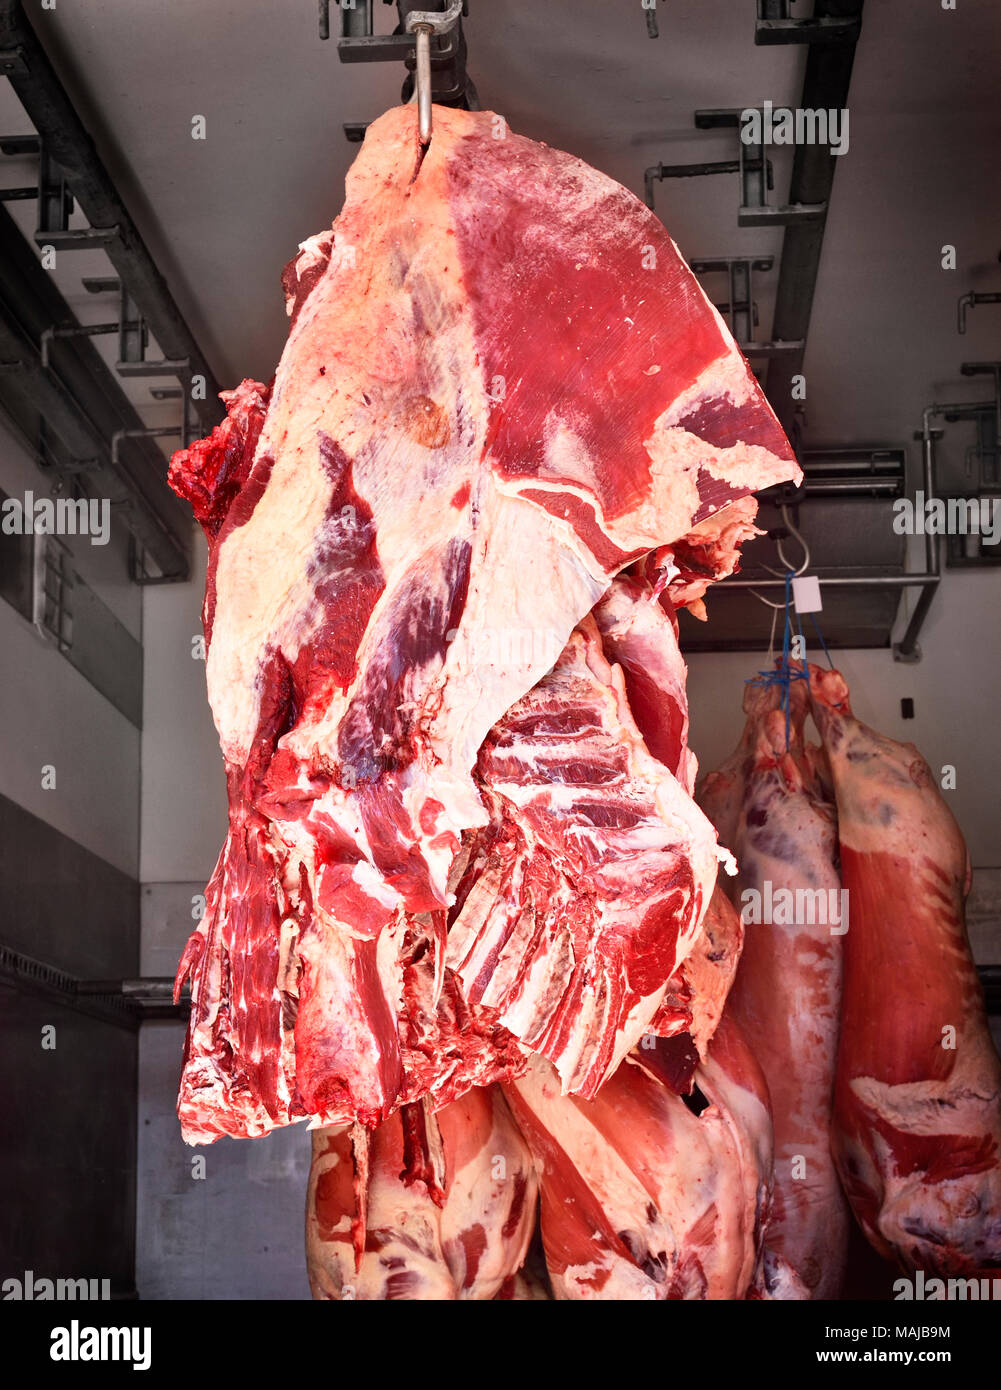 Frische, rohe Fleisch auf einem Schlachthof oder Metzgerei Shop. Fleischindustrie Szene mit hängenden Rindfleisch Schicht in einem Haus. Fleisch Transport. Stockfoto